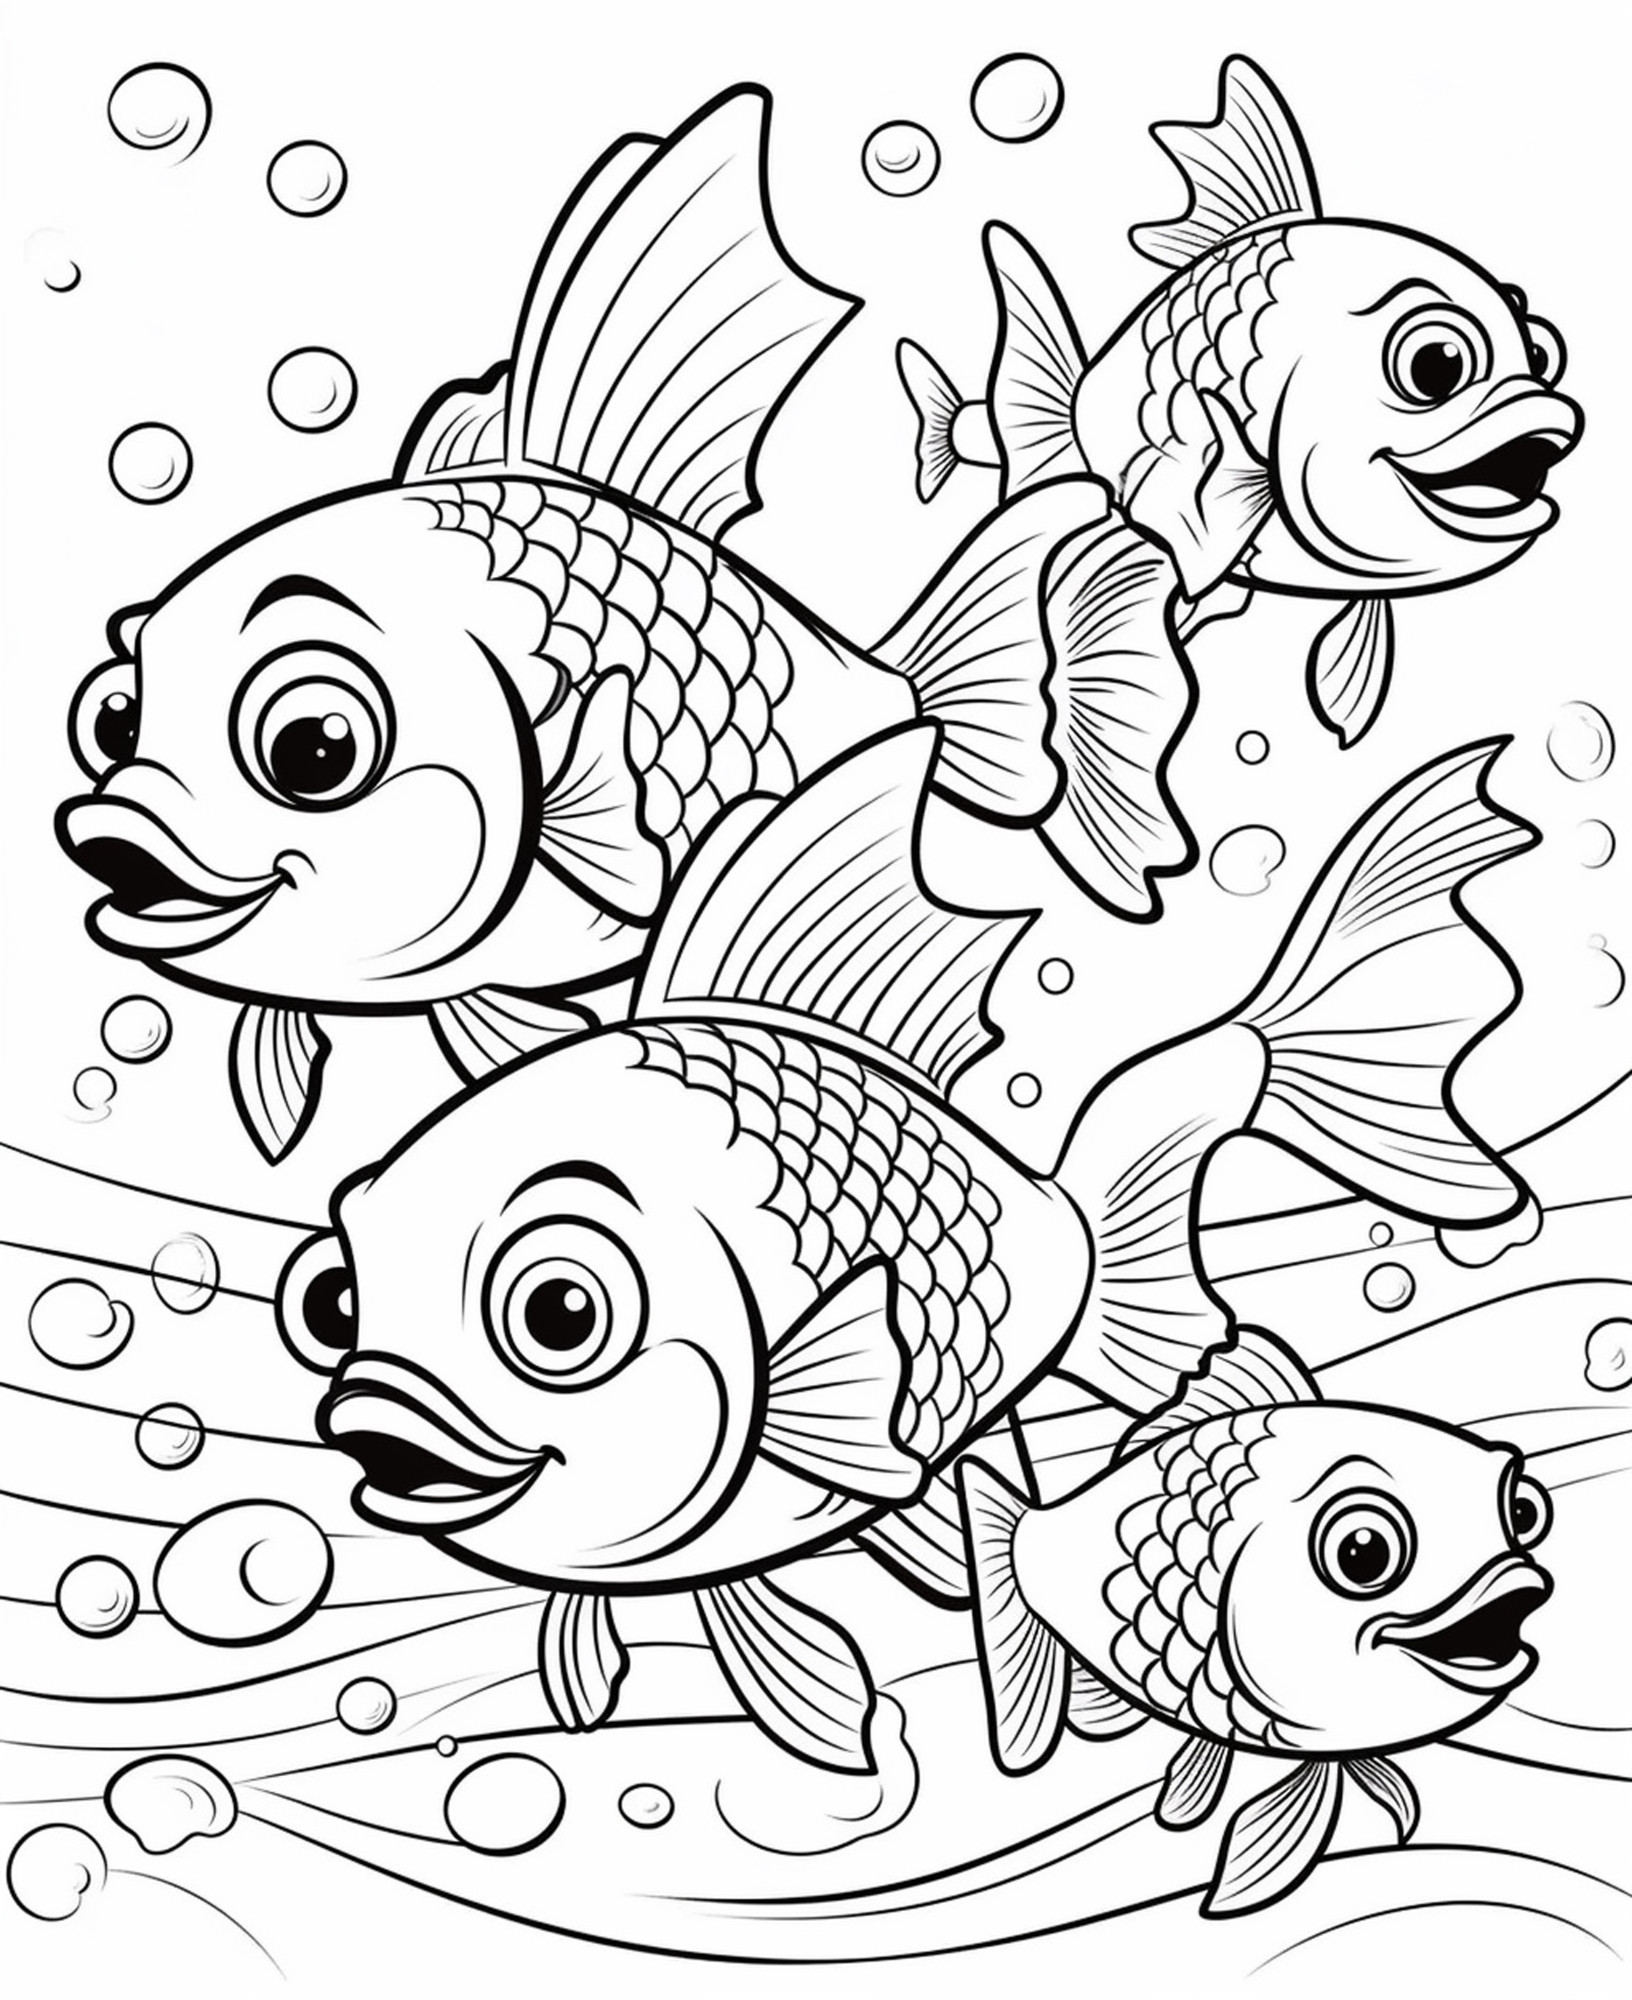 Раскраска для детей: мультяшная рыба карась